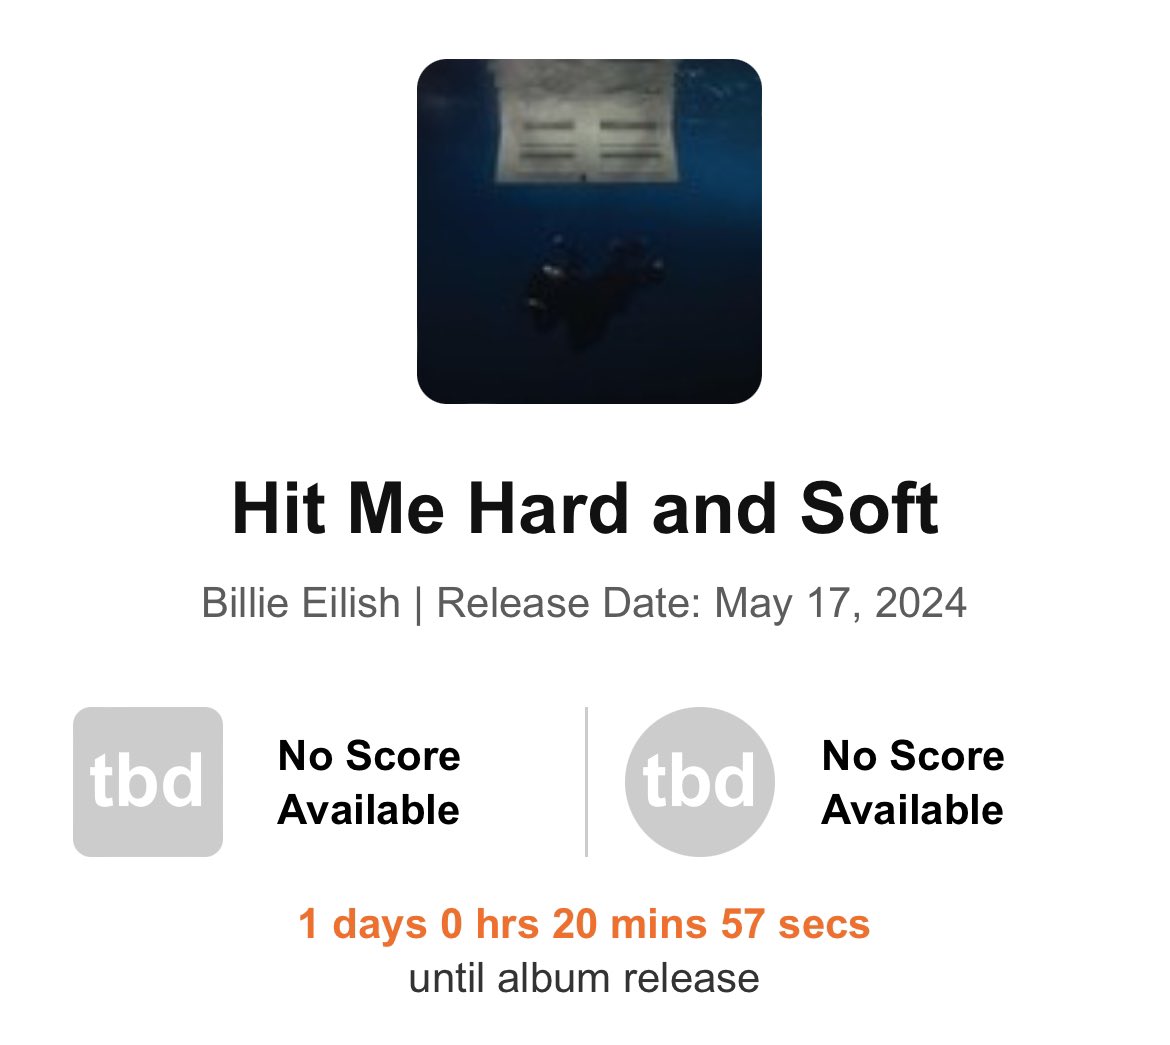 Página do “HIT ME HARD AND SOFT” está disponível no Metacritic, pronta para receber, muito em breve, reviews e pareceres dos críticos sobre o novo álbum de Billie Eilish.🔖